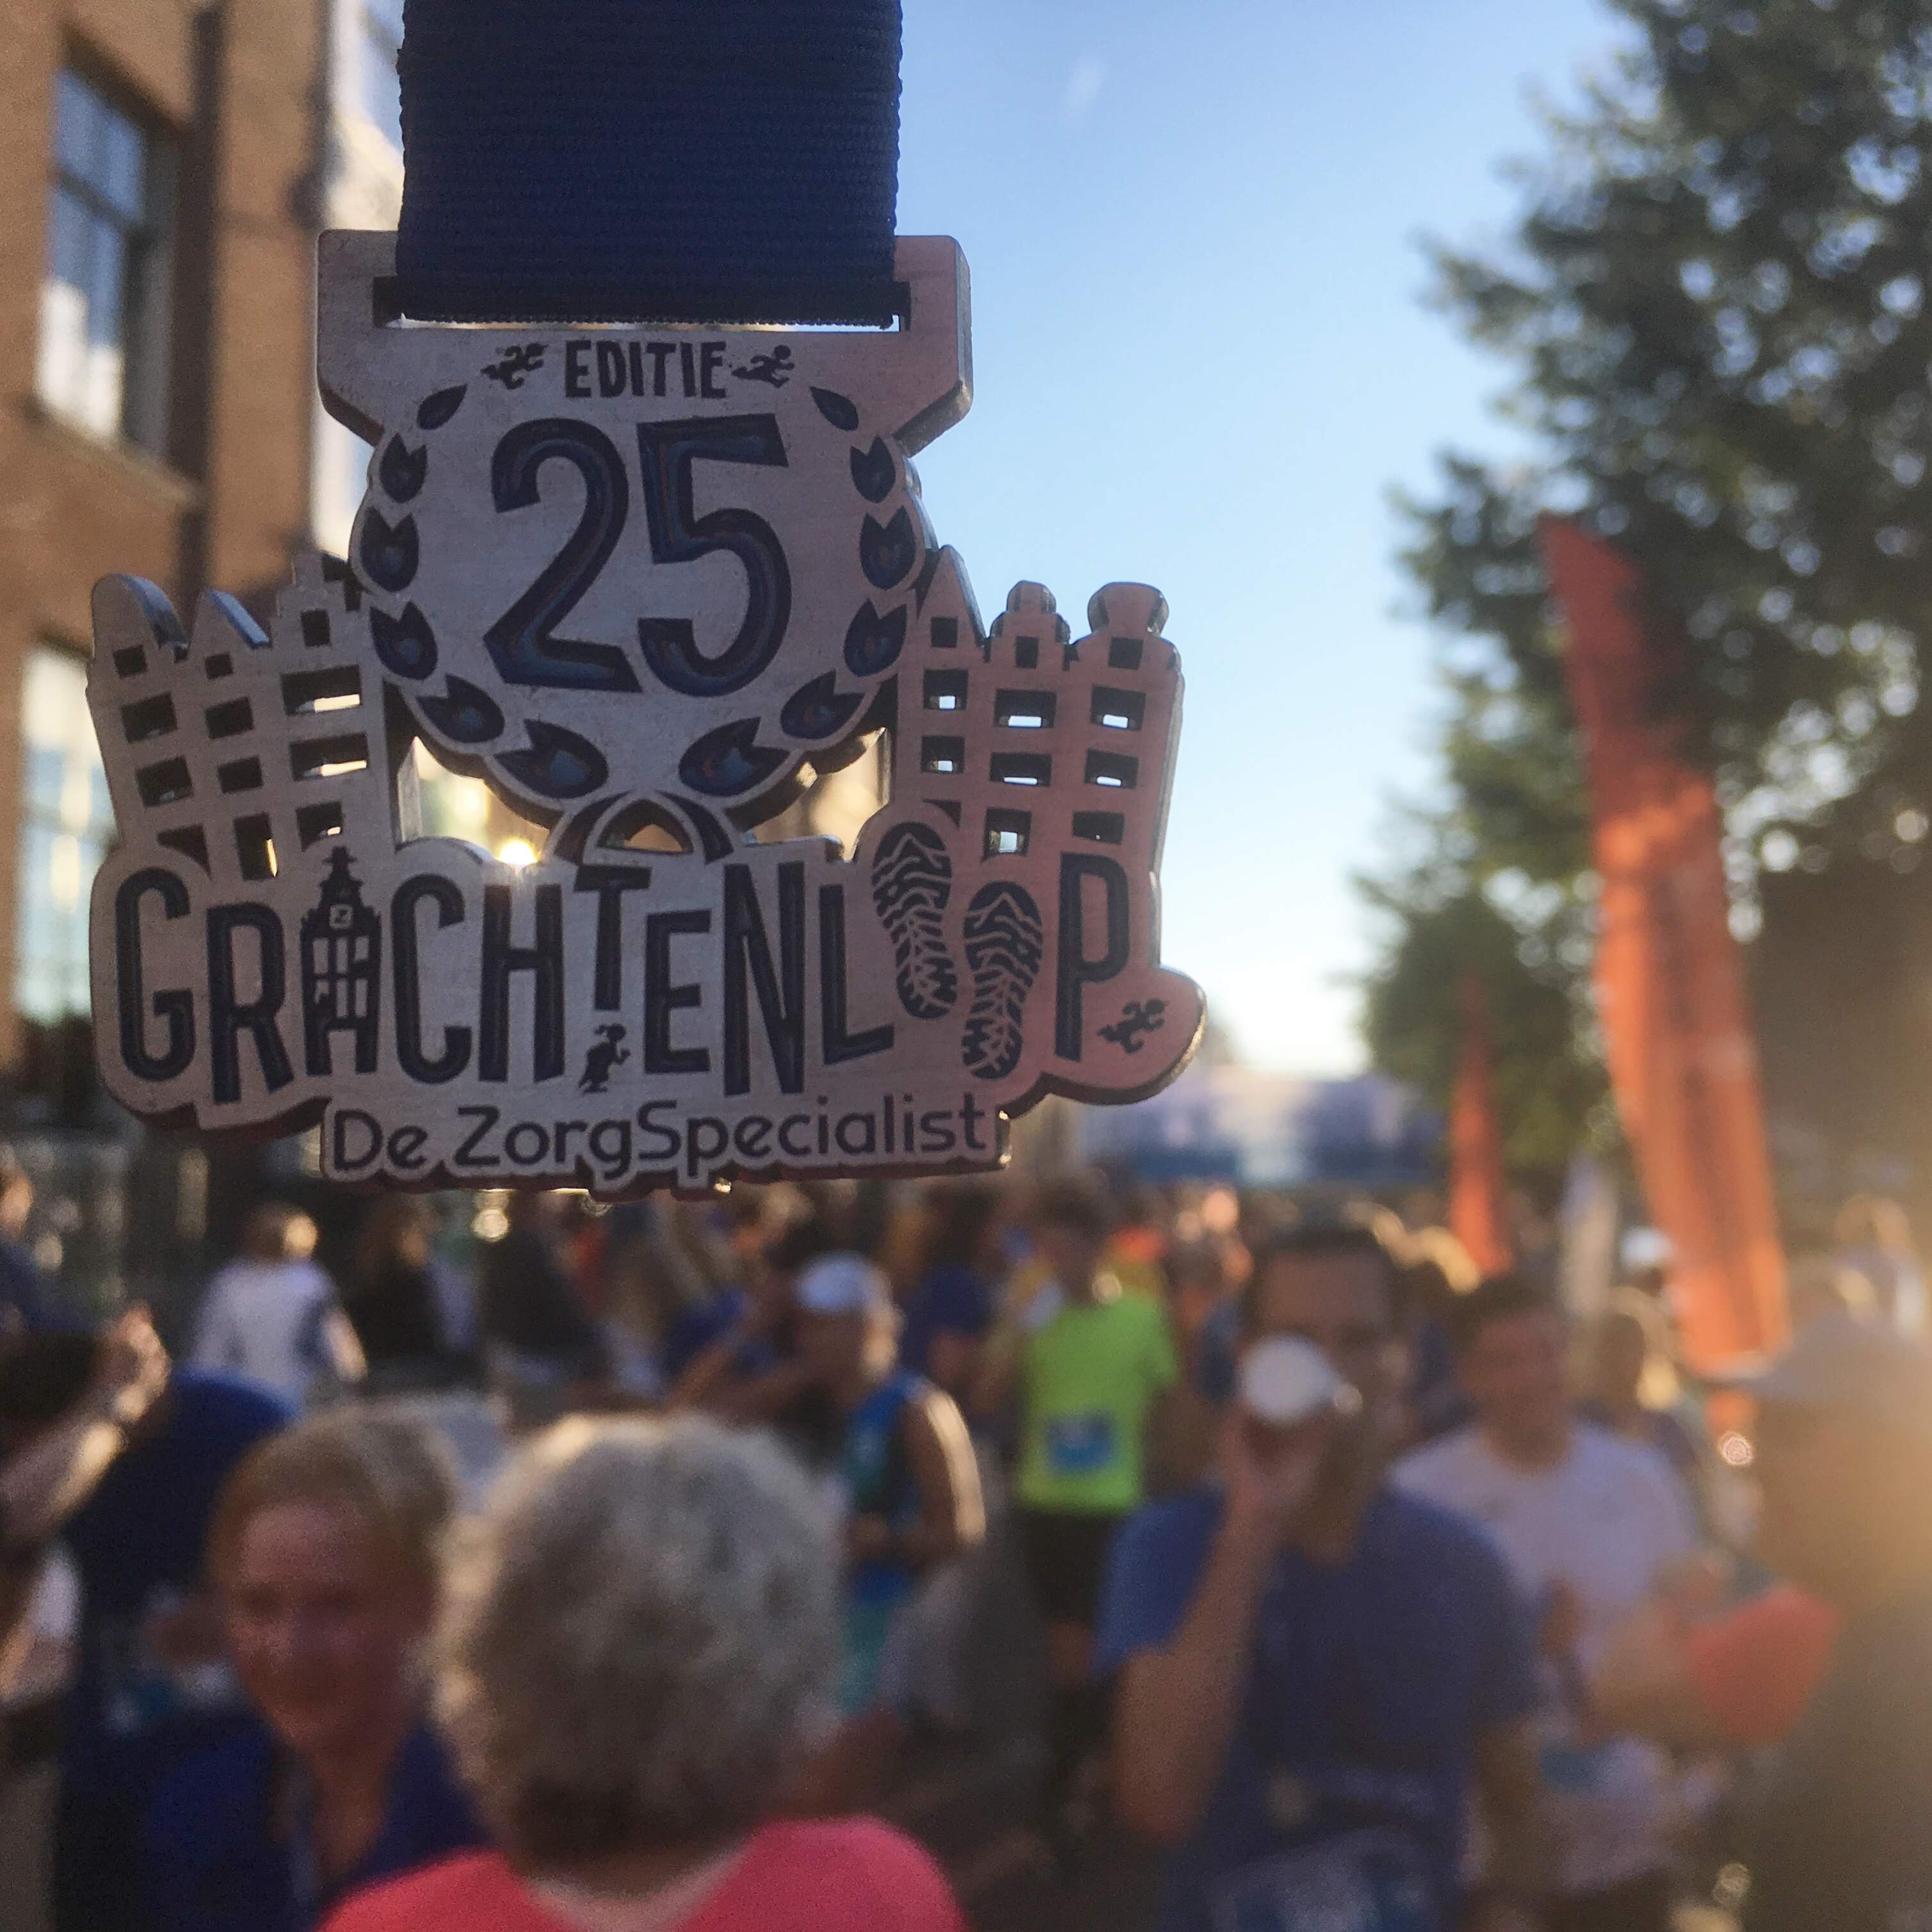 Головокружительный забег на 10 км - Haarlem Grachtenloop, 5 июля 2019